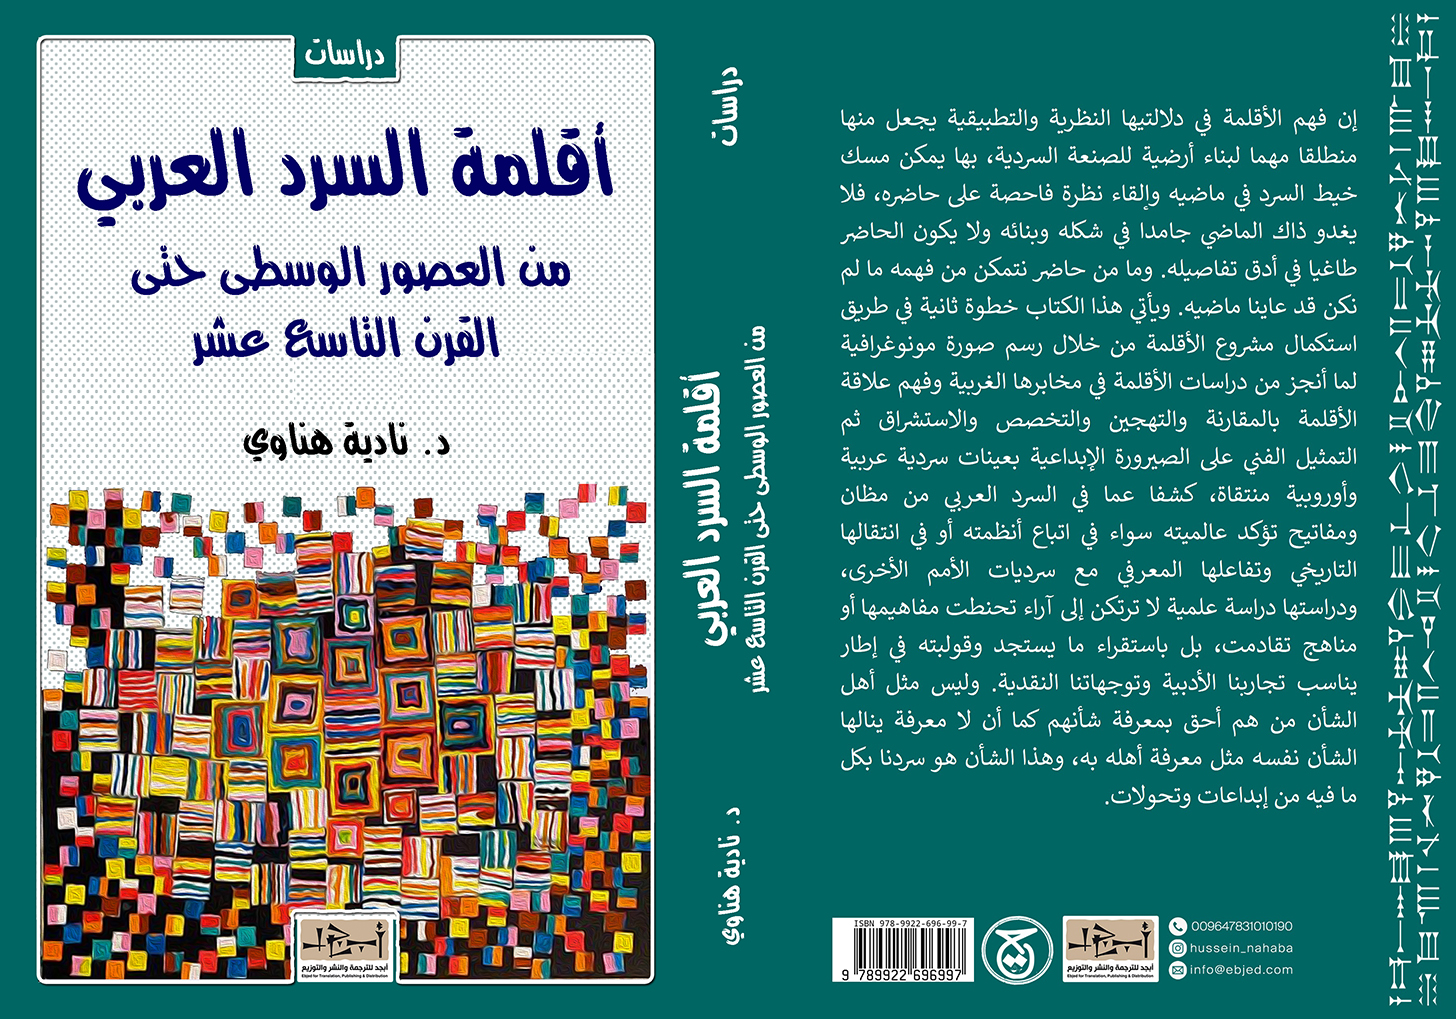 عنوان الكتاب: أقلمة السرد العربي (من العصور الوسطى حتى القرن التاسع عشر) تأليف: د. نادية هناوي التصنيف: دراسات